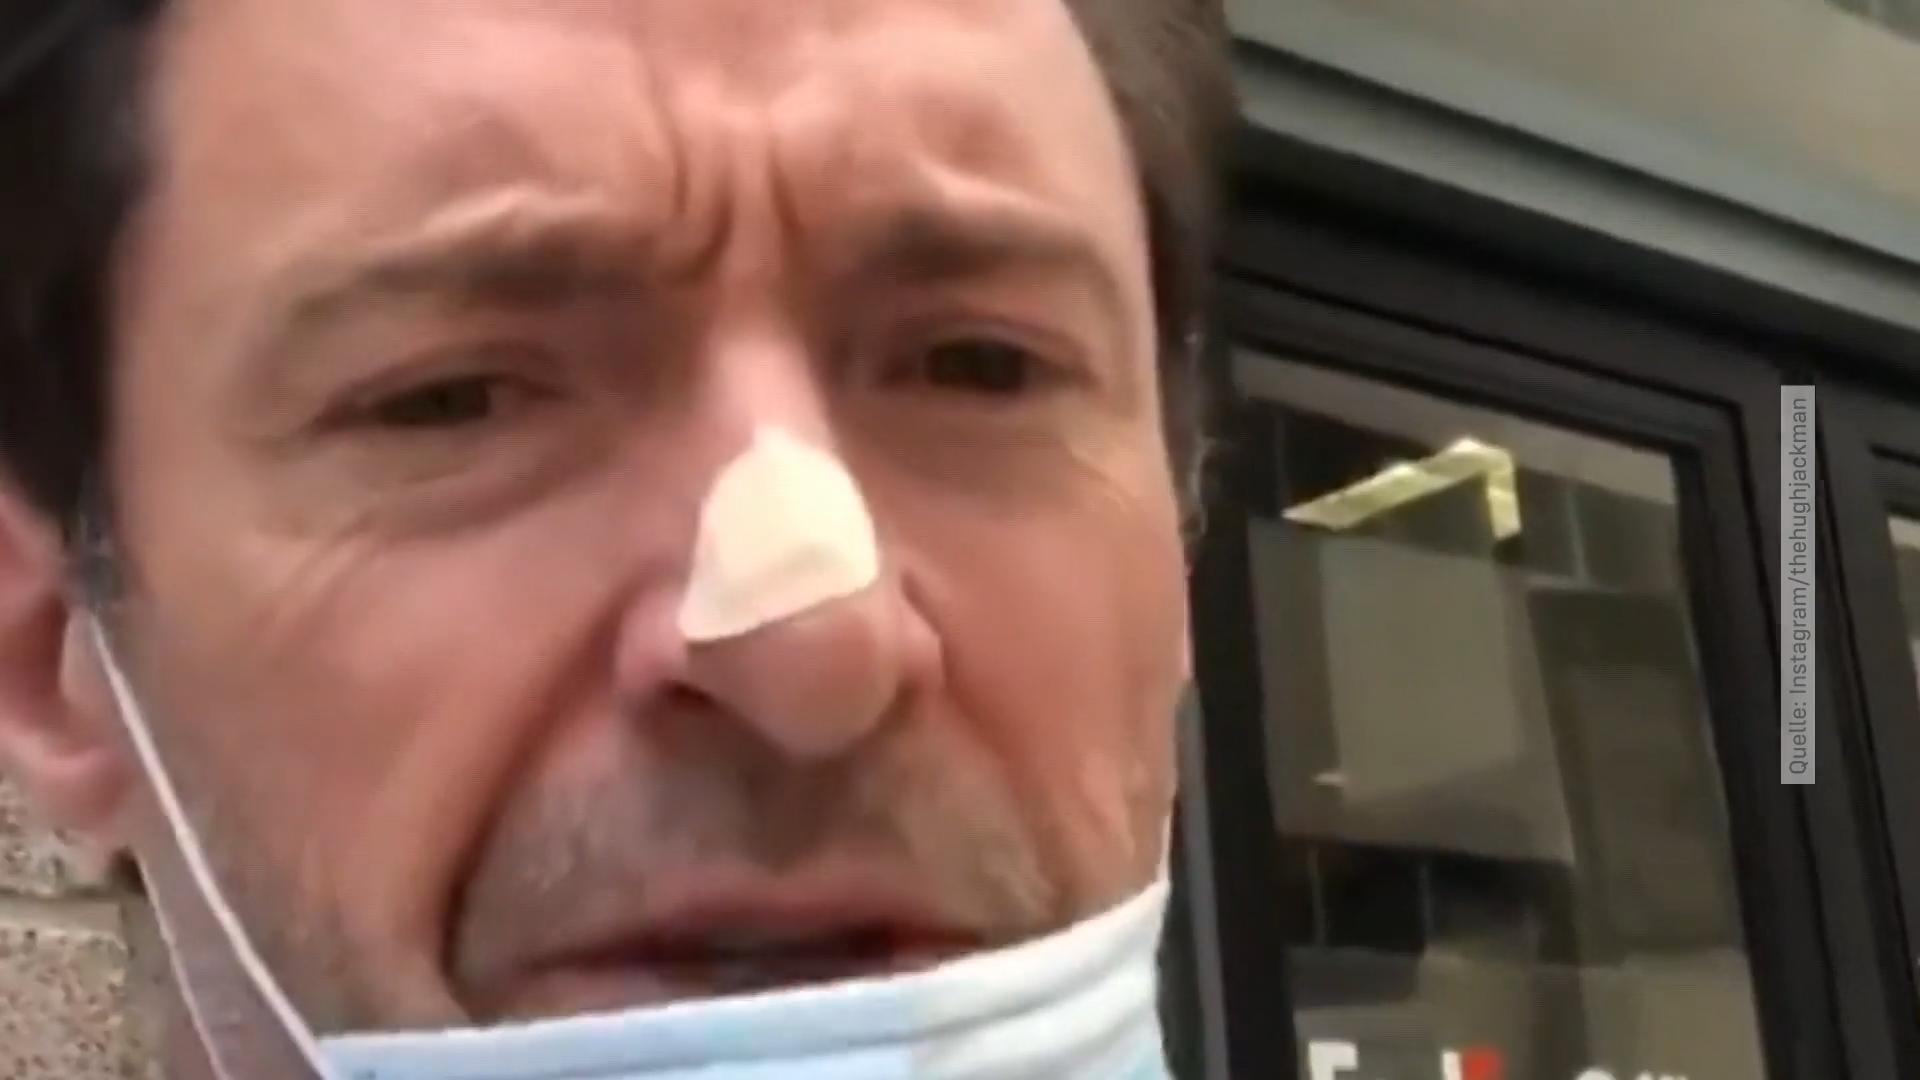 Hugh Jackman: Schon wieder Hautkrebs? "Wolverine"-Star musste wieder unters Messer